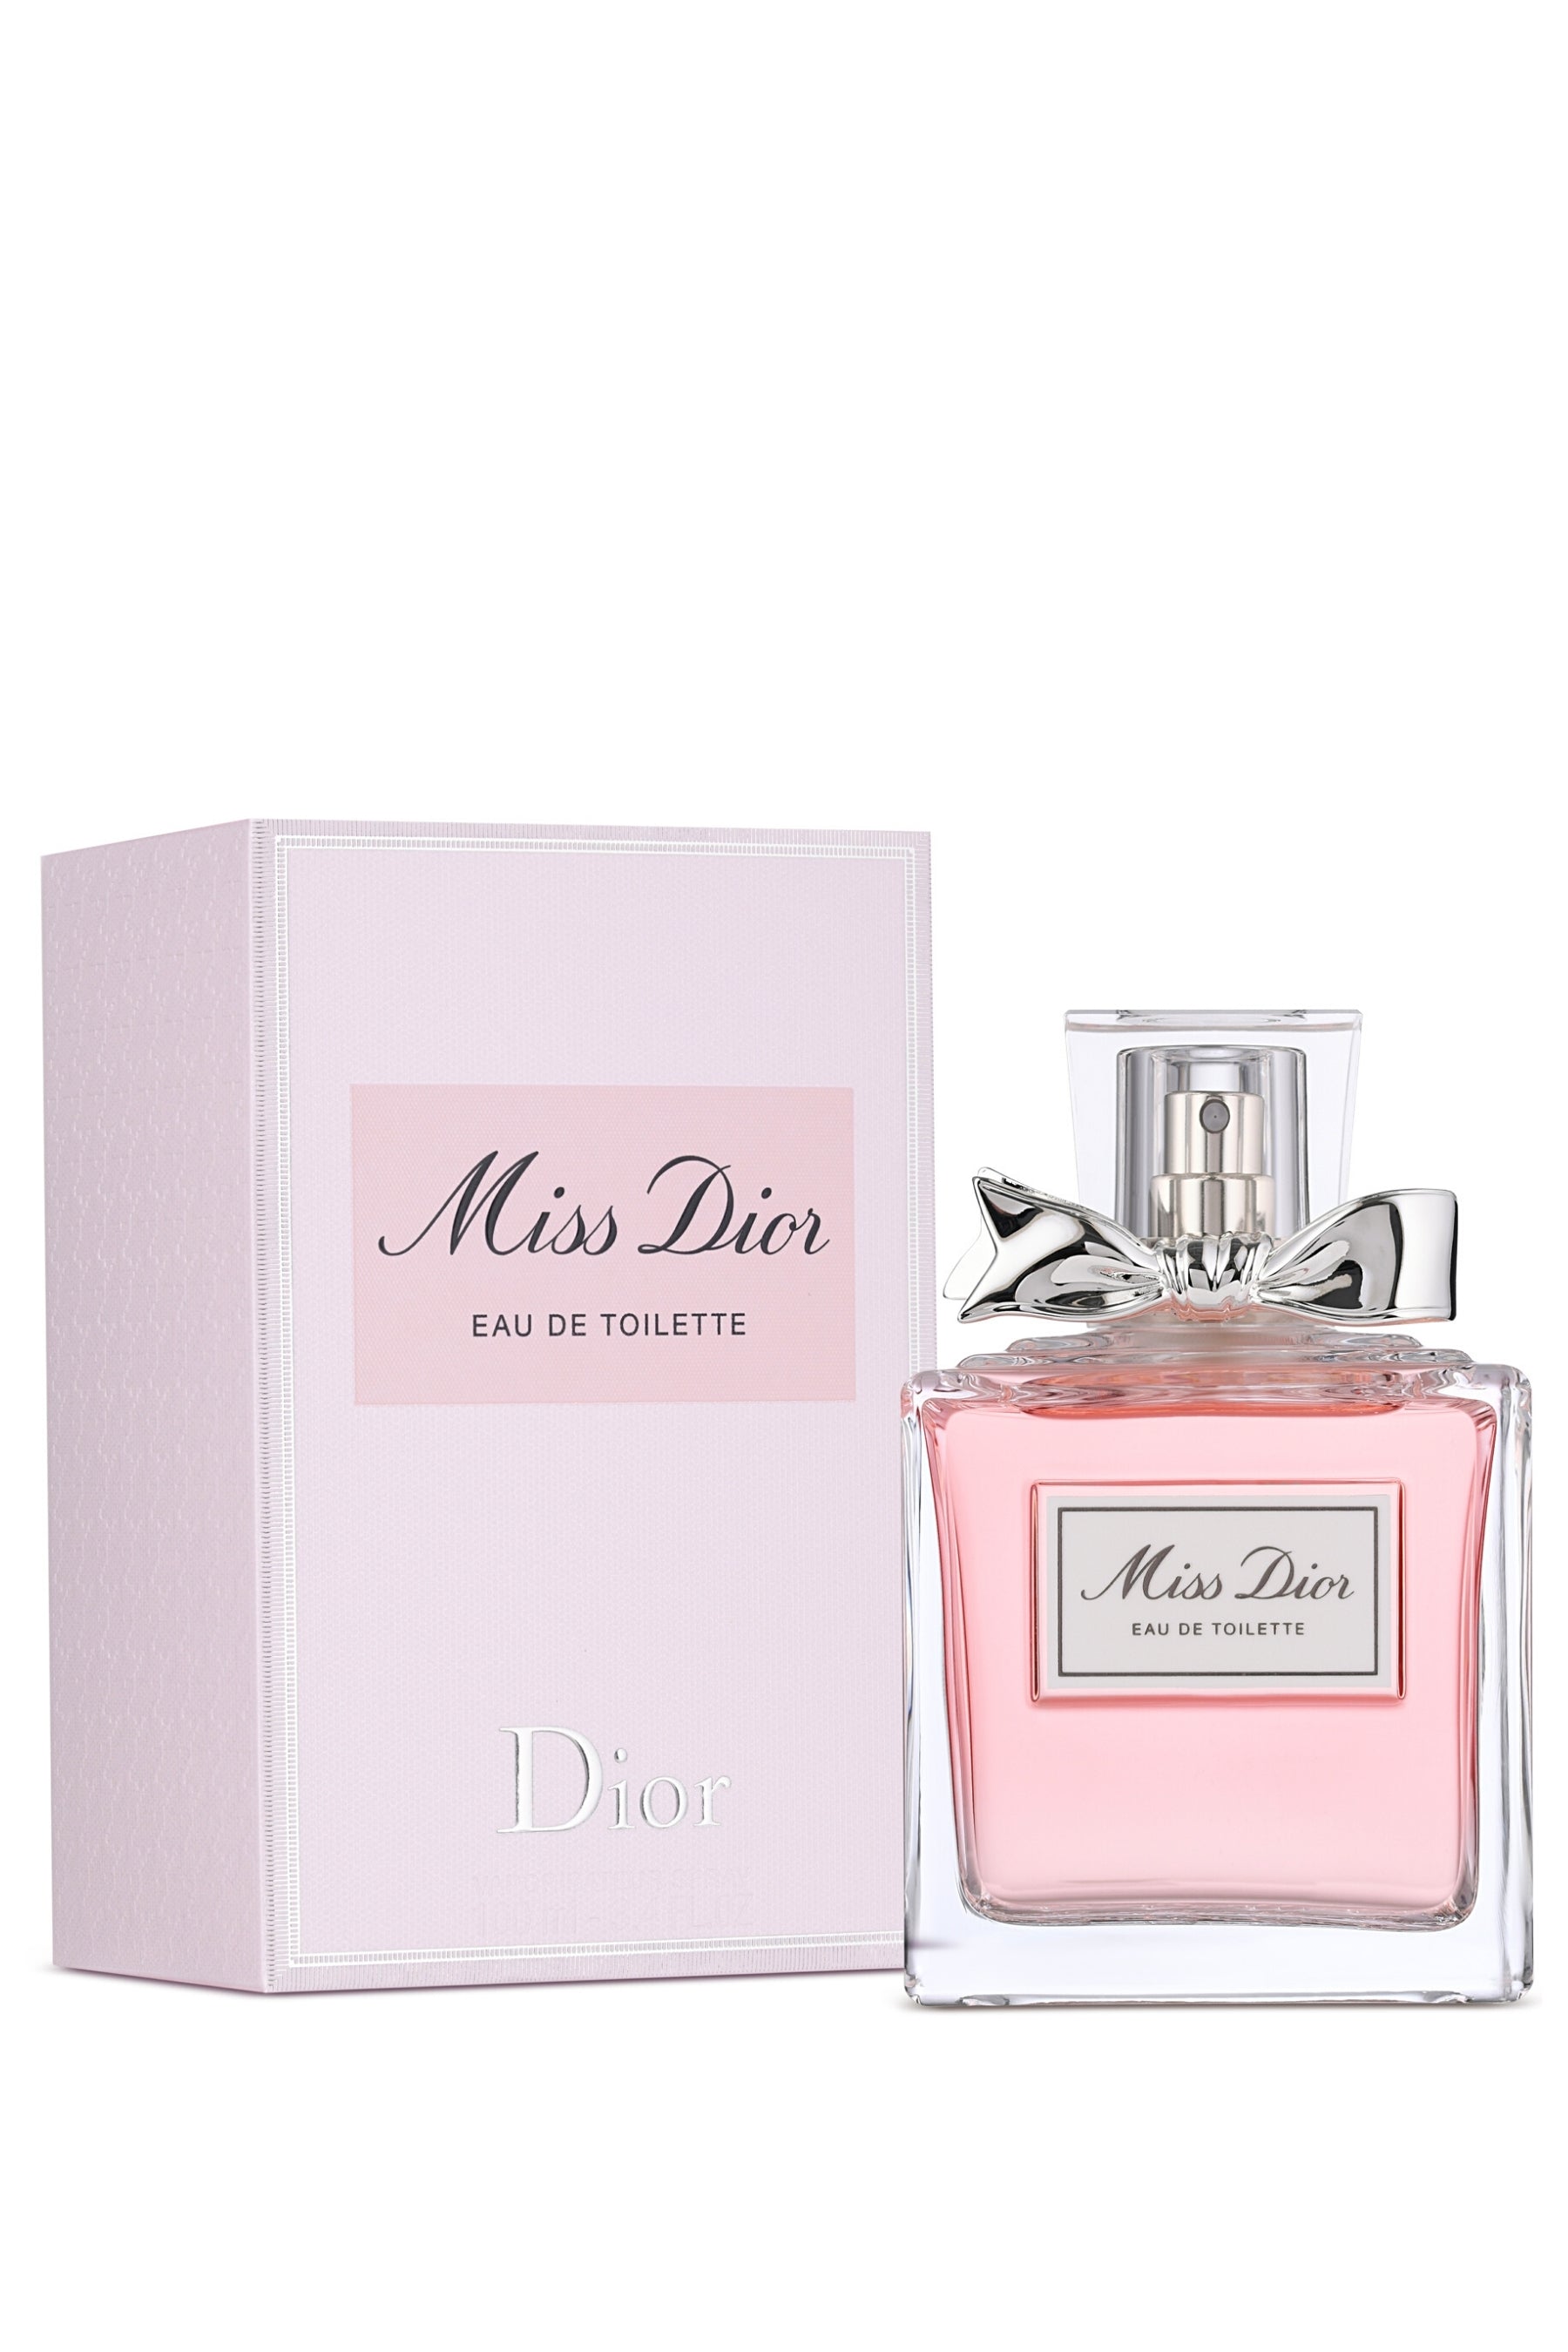 Perfume Miss Dior Eau de toilette Christian Dior SE Grasse parfum  cosmetics perfume Shop png  PNGEgg